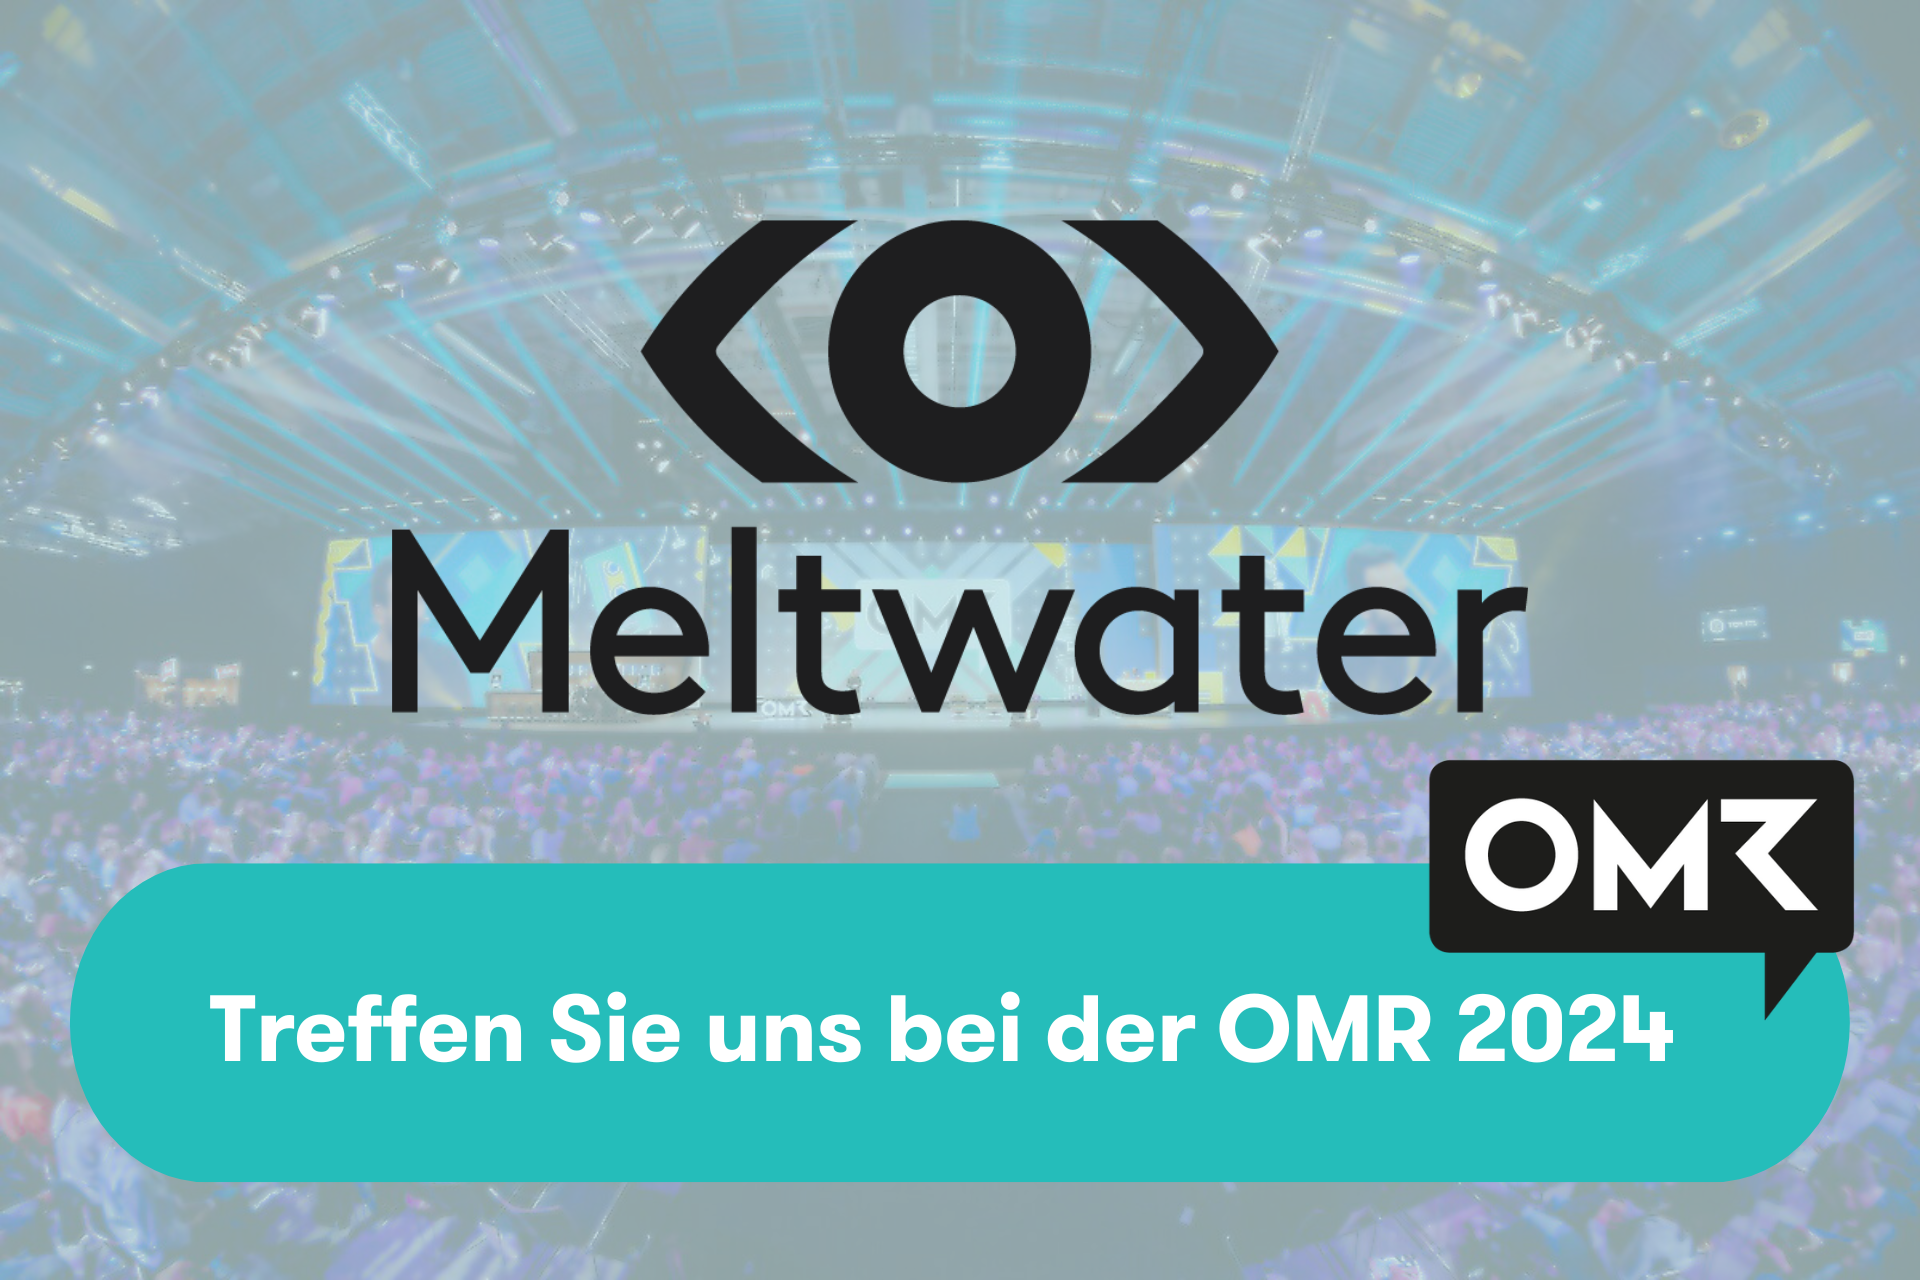 Meltwater und OMR Logo mit der Beschreibung: Treffen Sie uns bei der OMR 2024